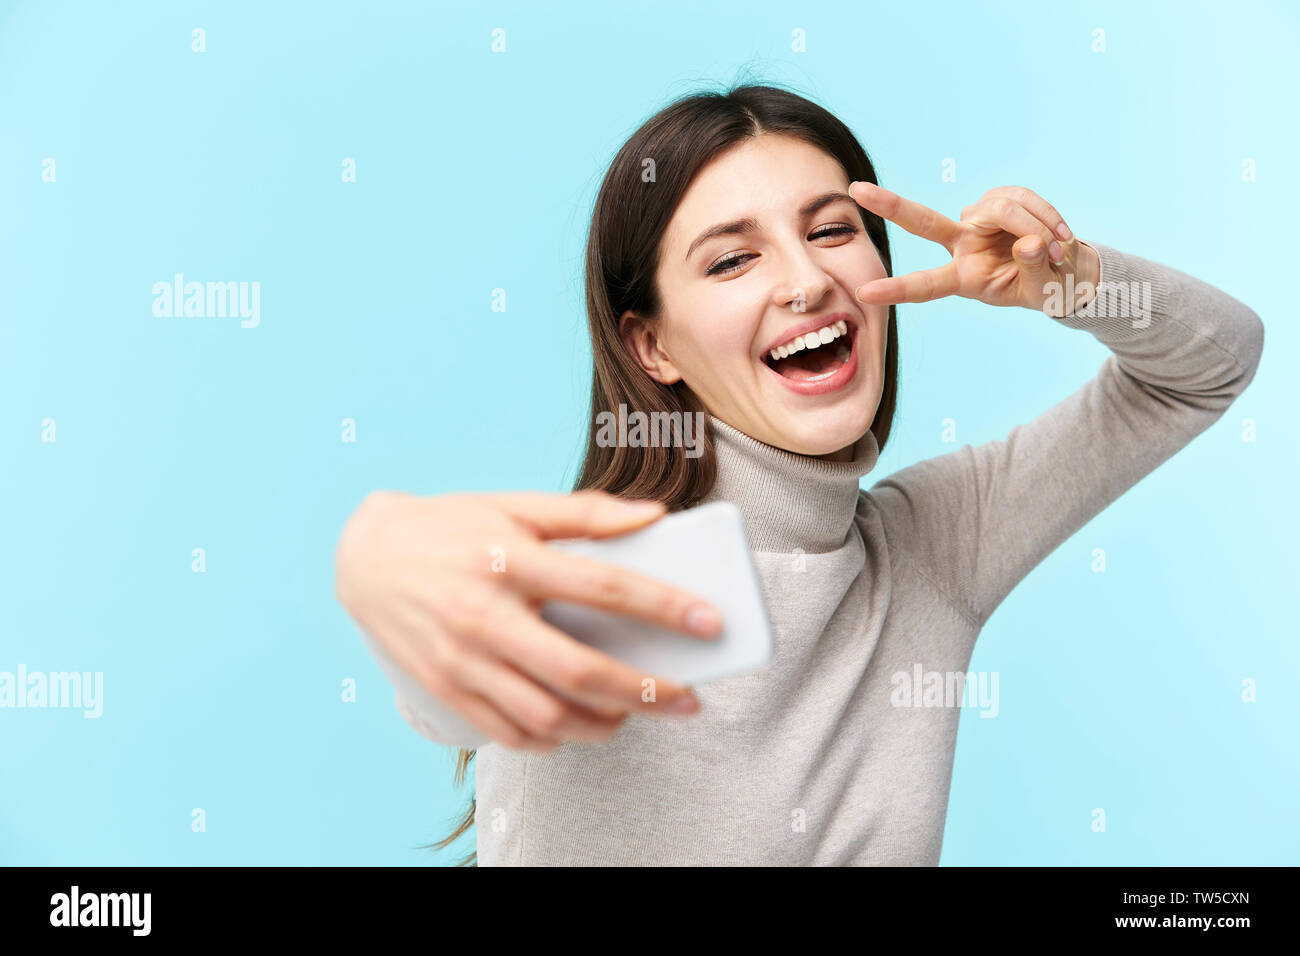 Schönen jungen kaukasischen Frau eine selfie, glücklich und lächelnd, auf blauem Hintergrund isoliert Stockfoto